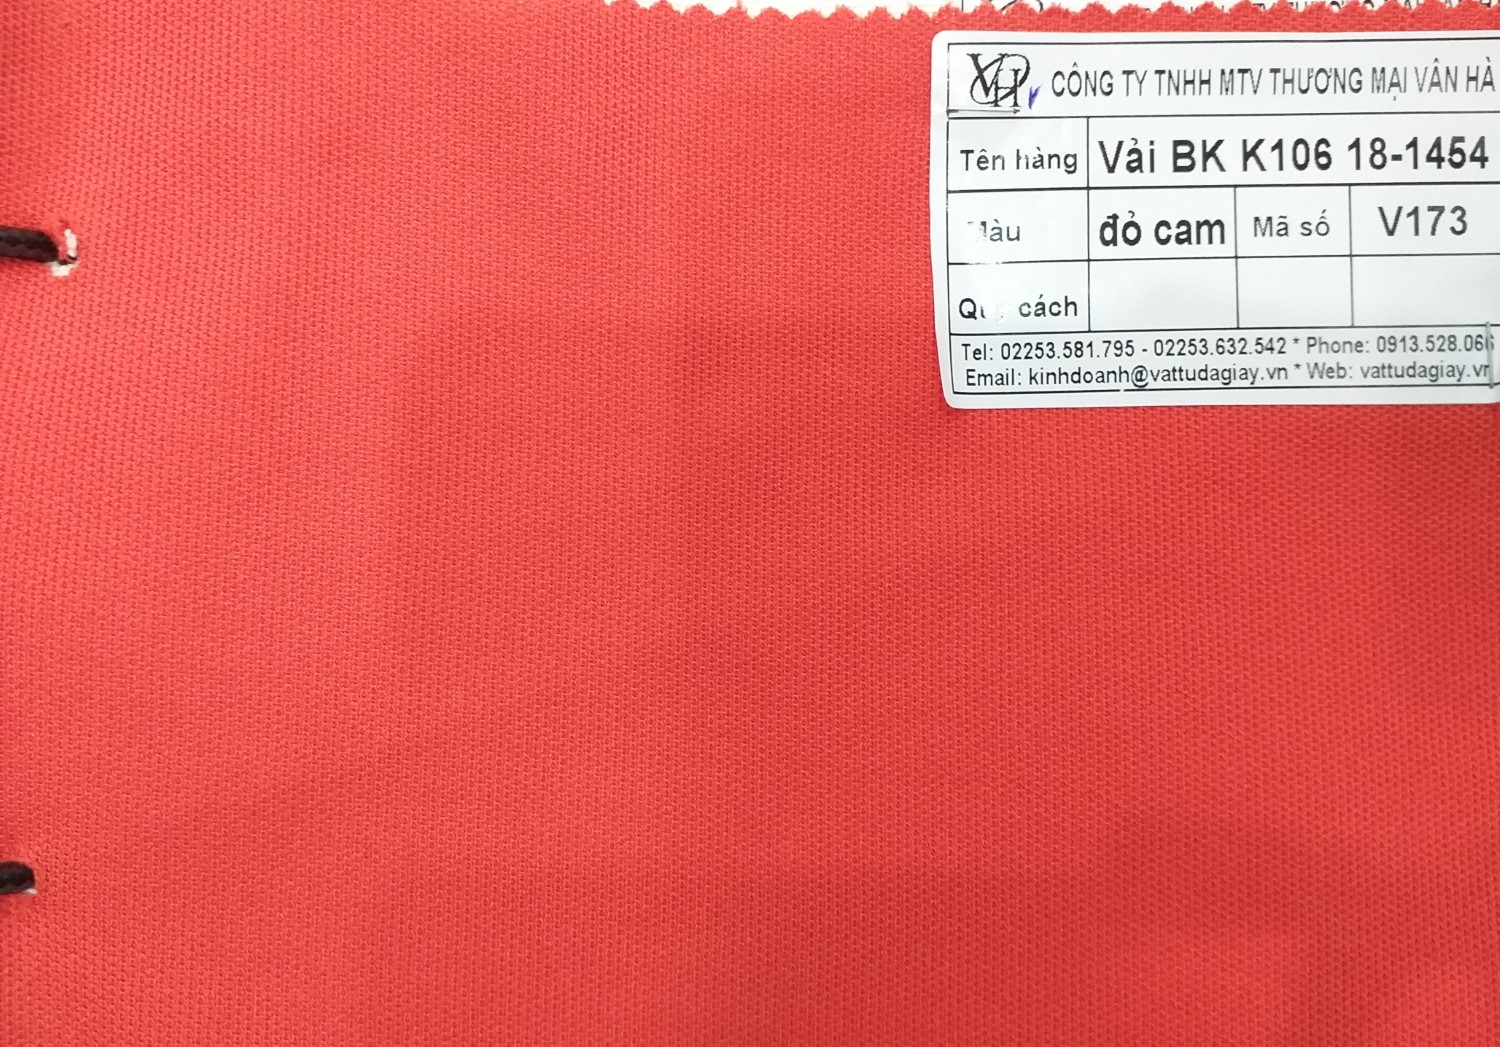 vải bk k106 18 1454 đỏ cam mã v173 - Vải BK K106 18-1454 đỏ cam mã V173